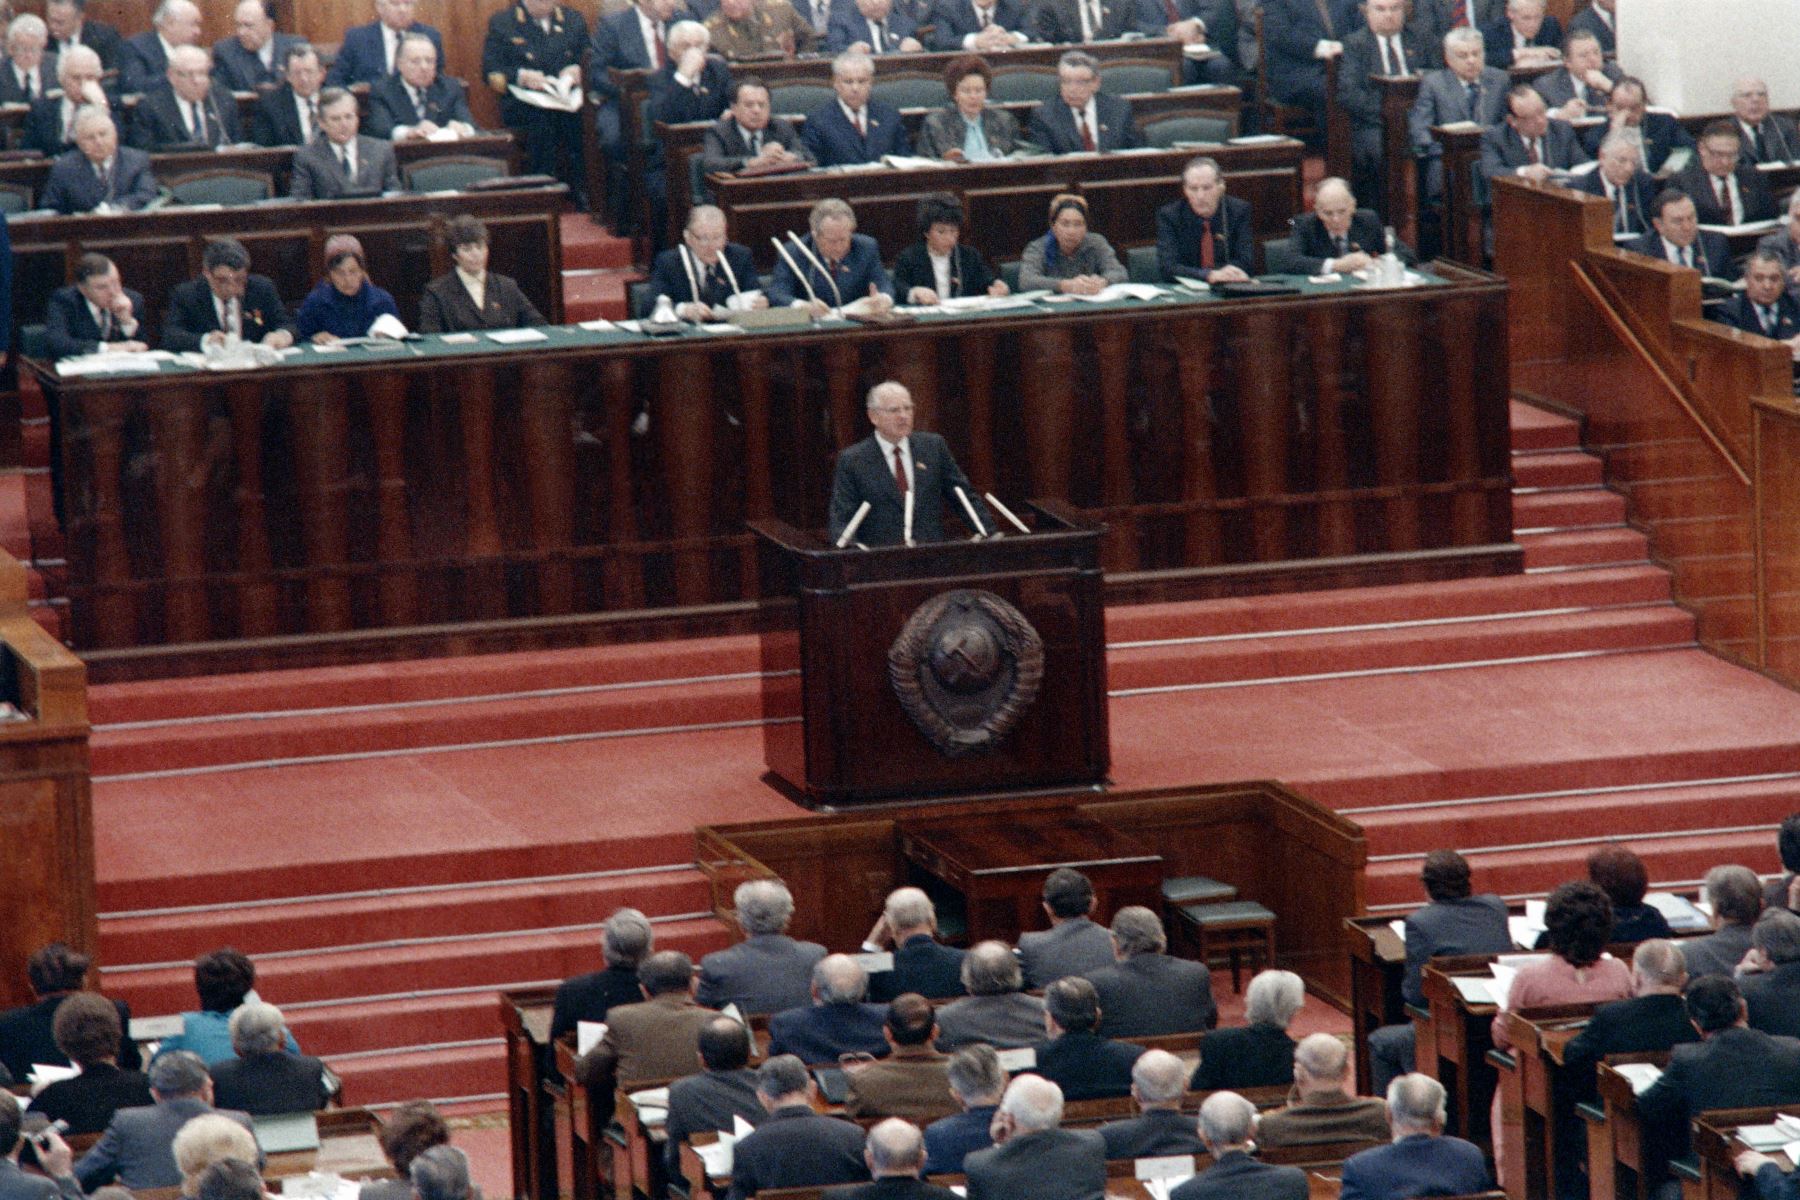 El líder soviético Mikhail Gorbachev pronuncia un discurso el 29 de noviembre de 1988 en Moscú en la sesión inaugural del Soviet Supremo en el Kremlin de Moscú. 
Foto: AFP